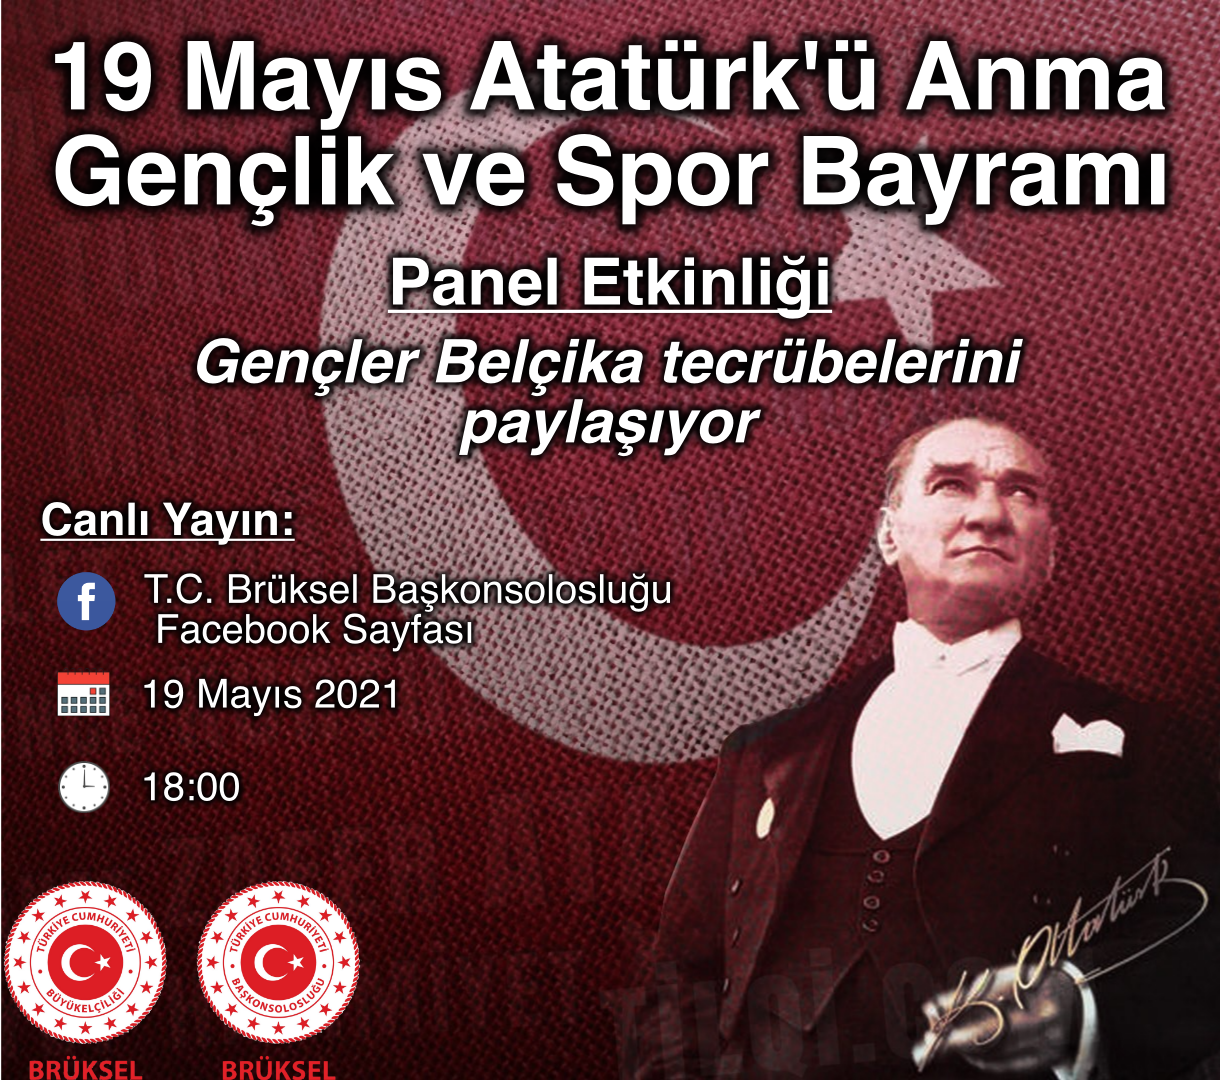 19 Mayıs Atatürk’ü Anma Gençlik ve Spor Bayramı münasebetiyle Bayram Mesaji Yayinladi